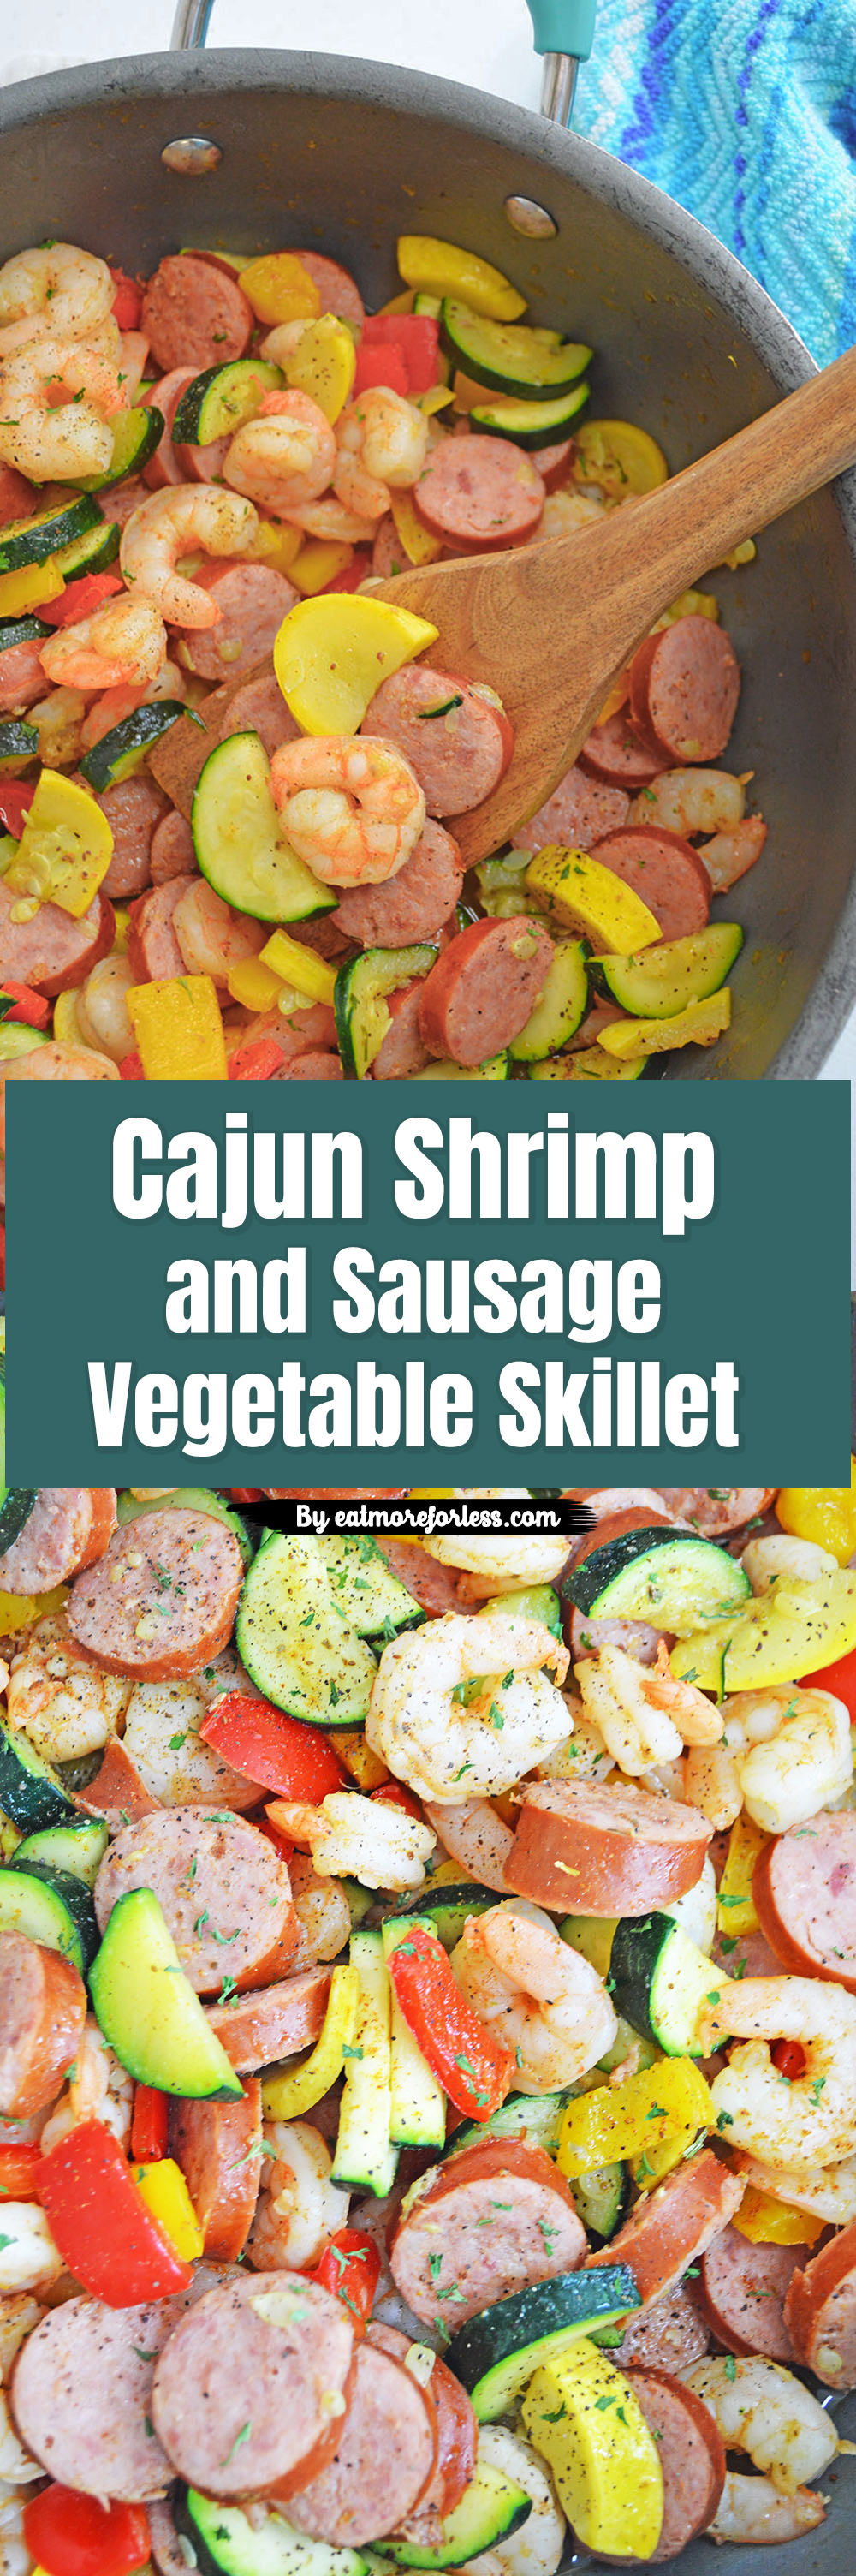 shrimp and sausage skillet